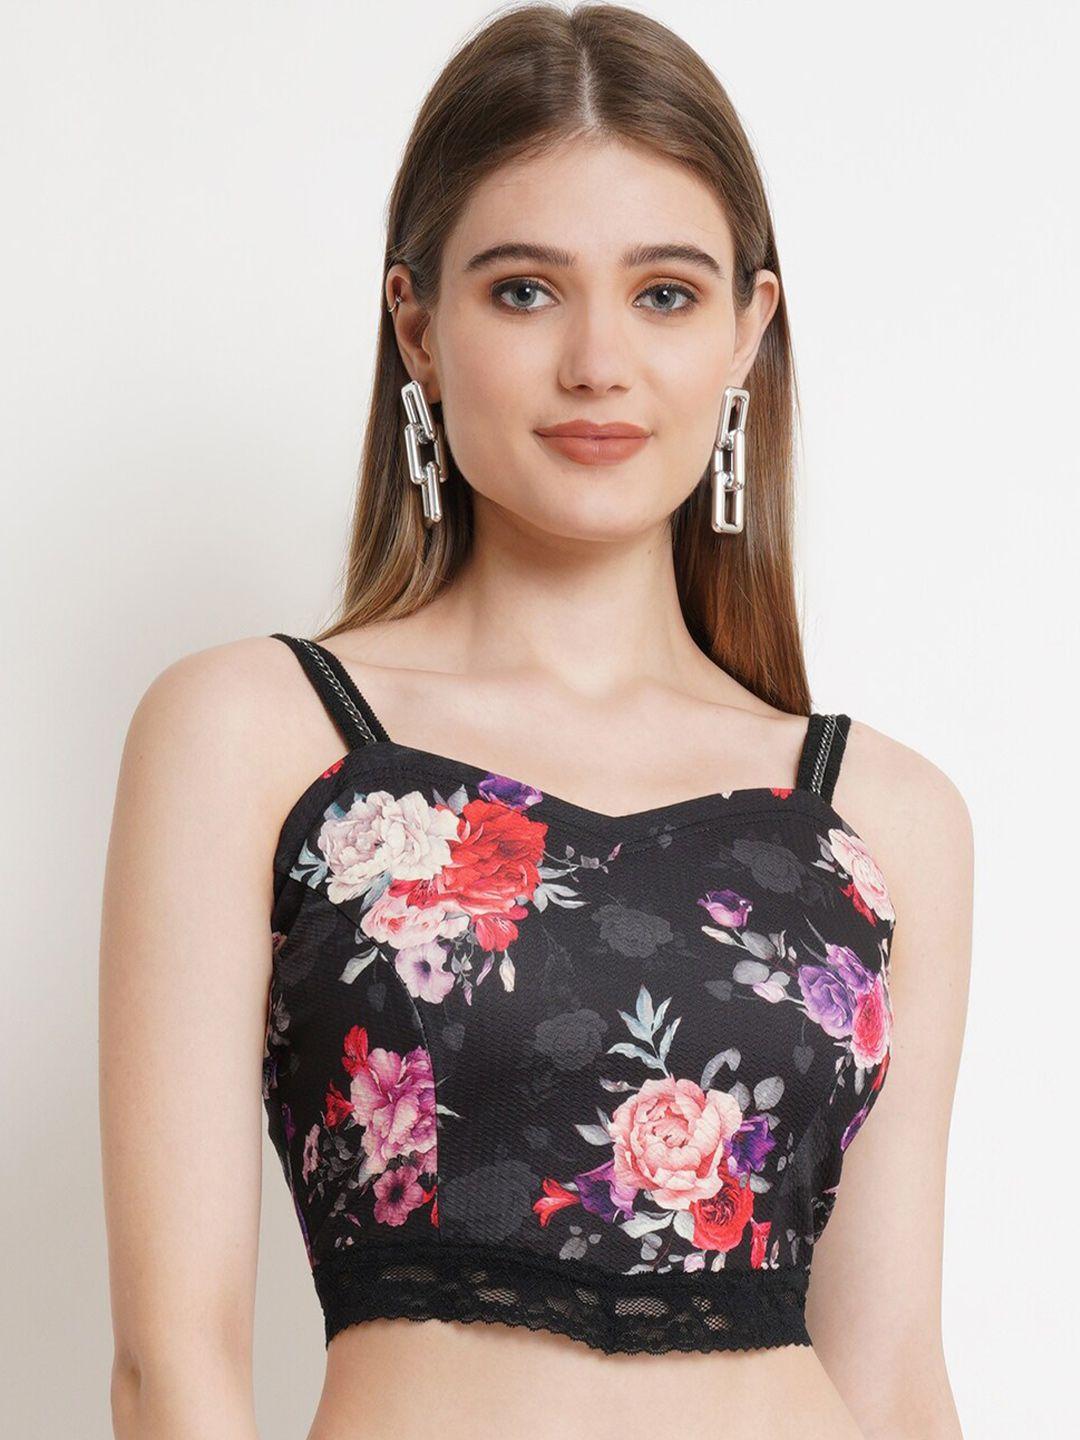 popwings-floral-printed-shoulder-straps-crop-top